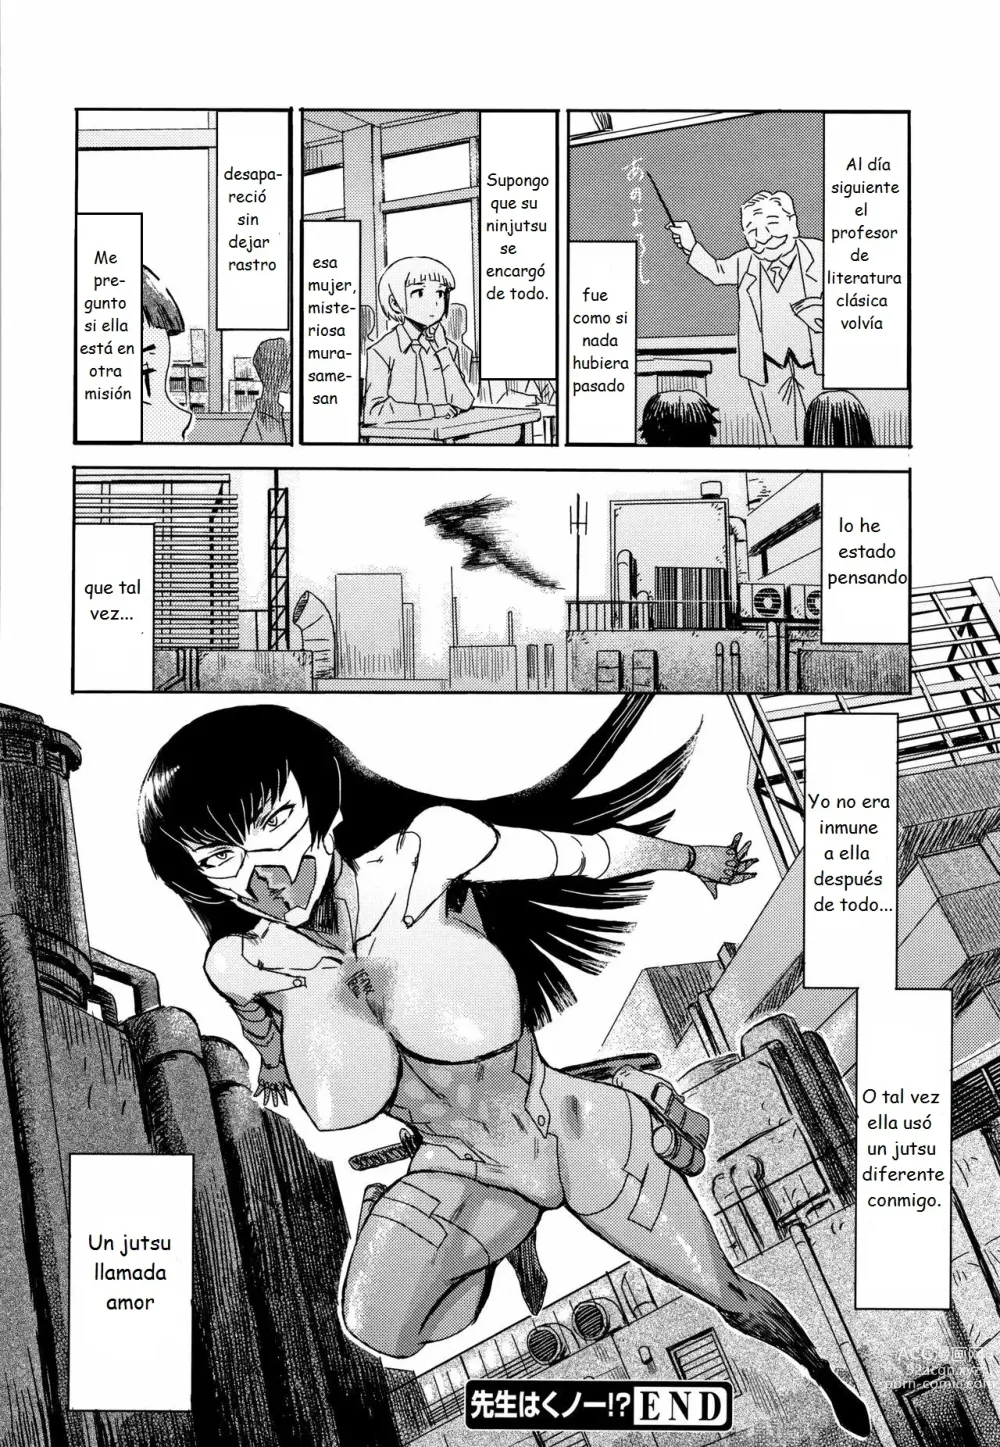 Page 25 of manga ¿¡Sensei es una kunoichi!?